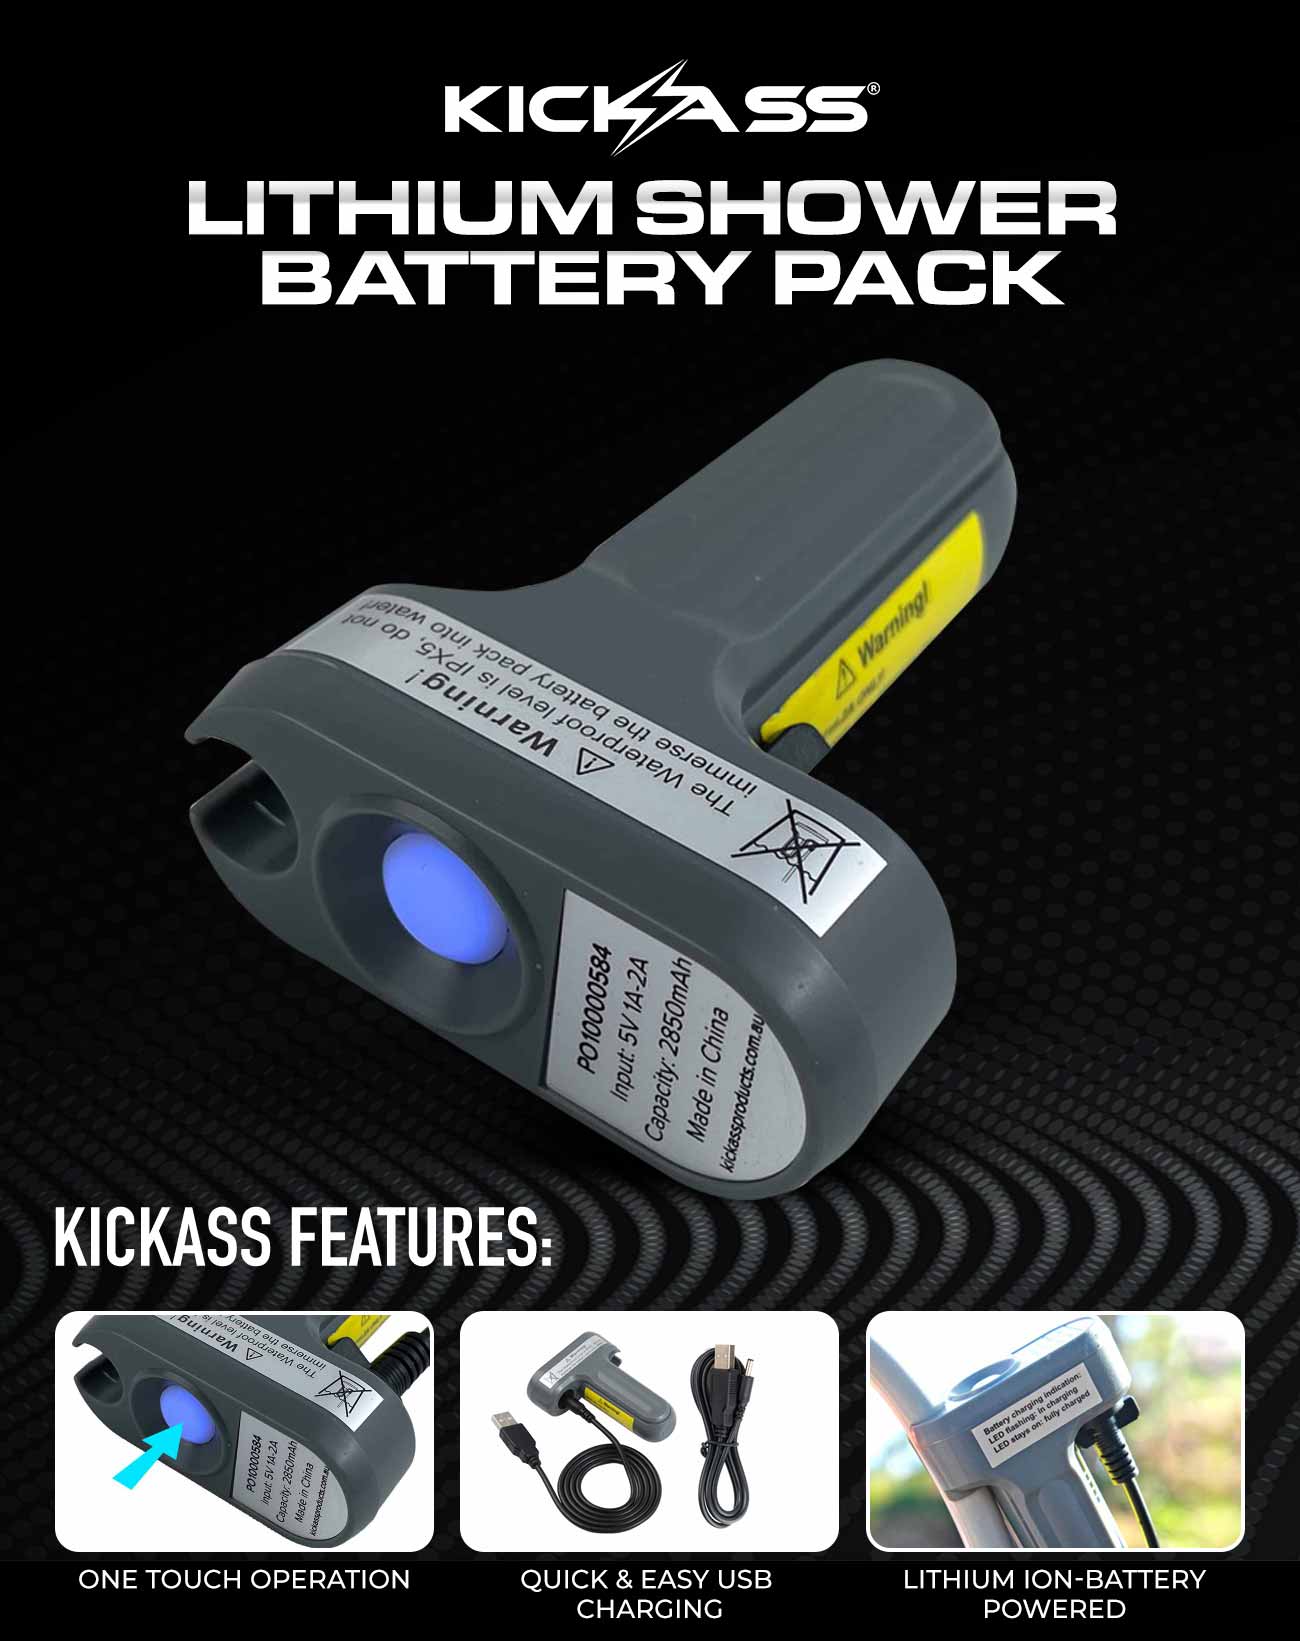 KickAss Lithium Shower Battery Pack